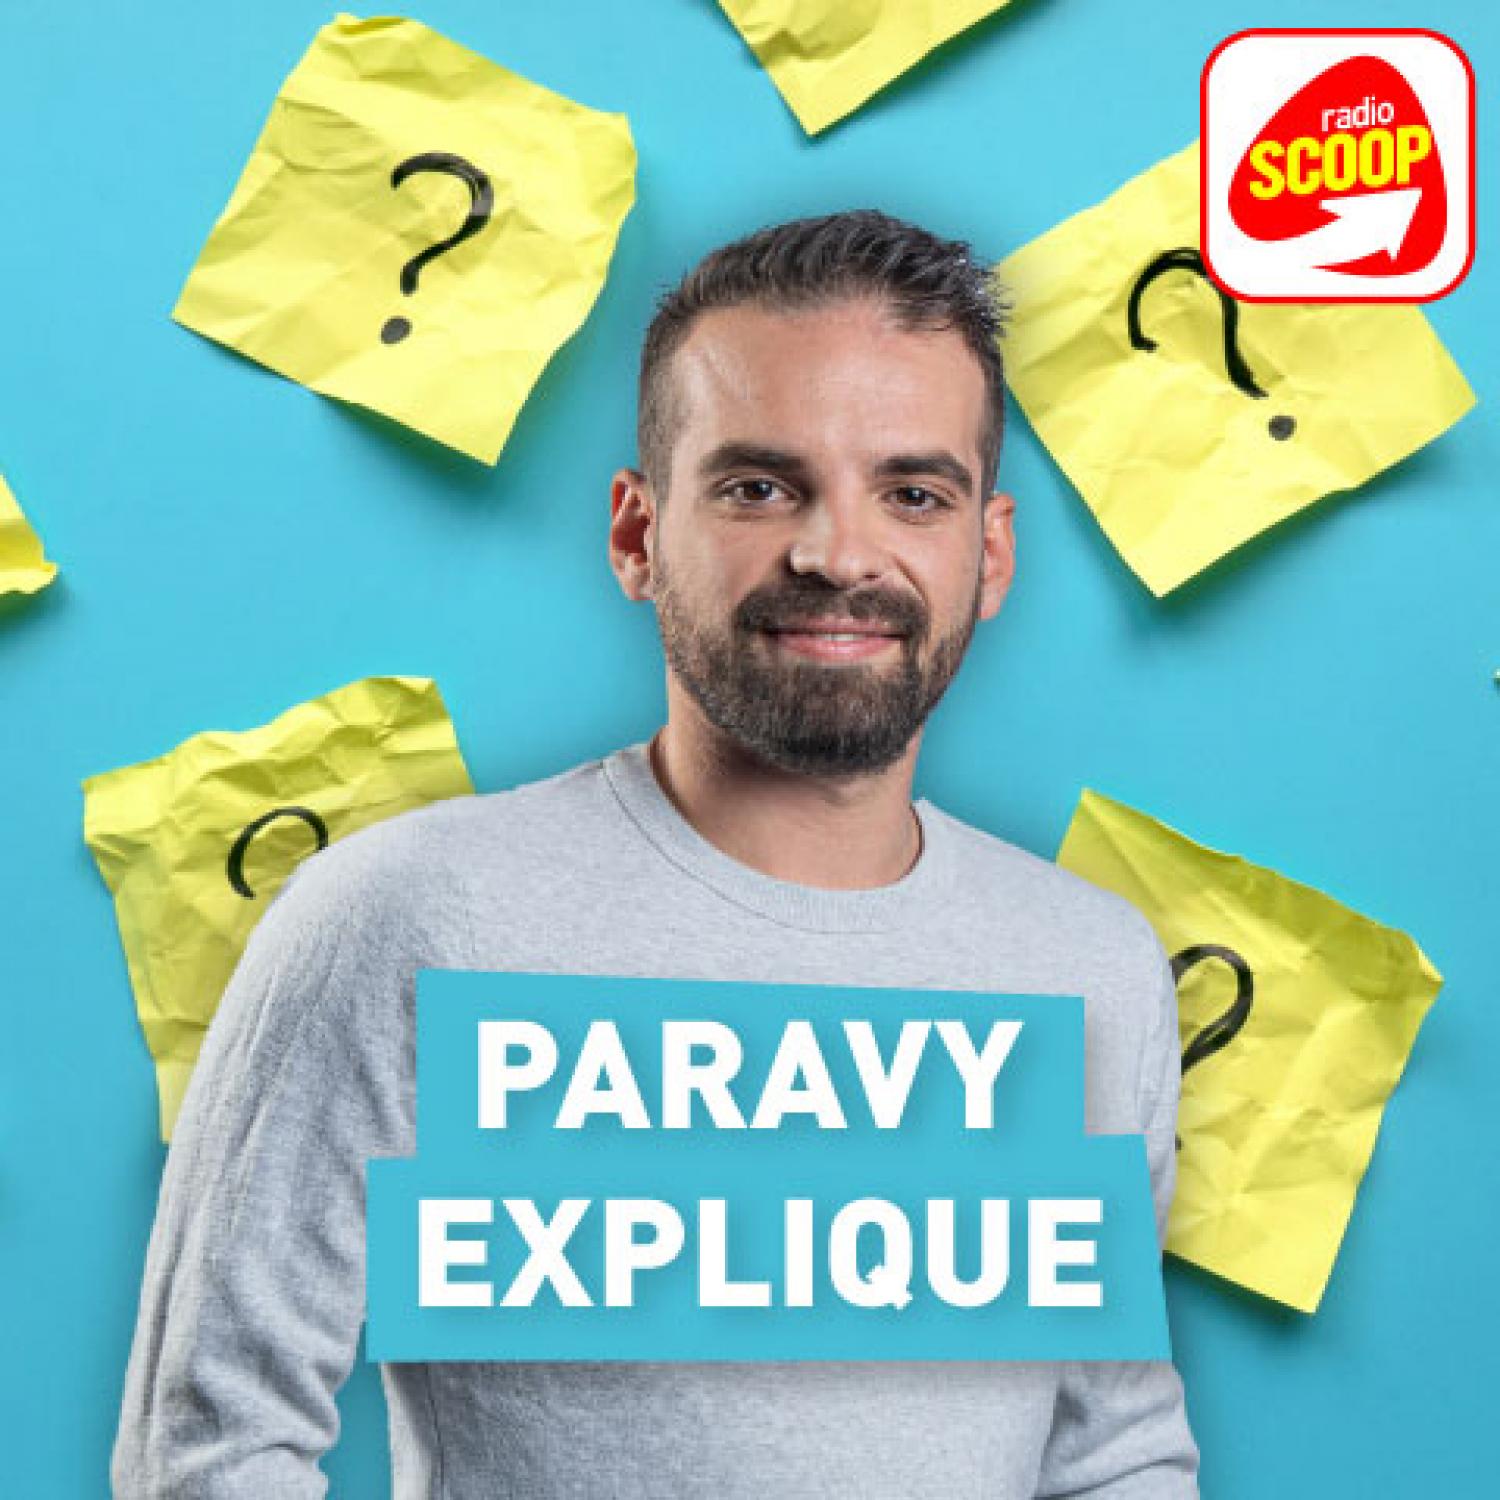 Paravy explique - Radio SCOOP